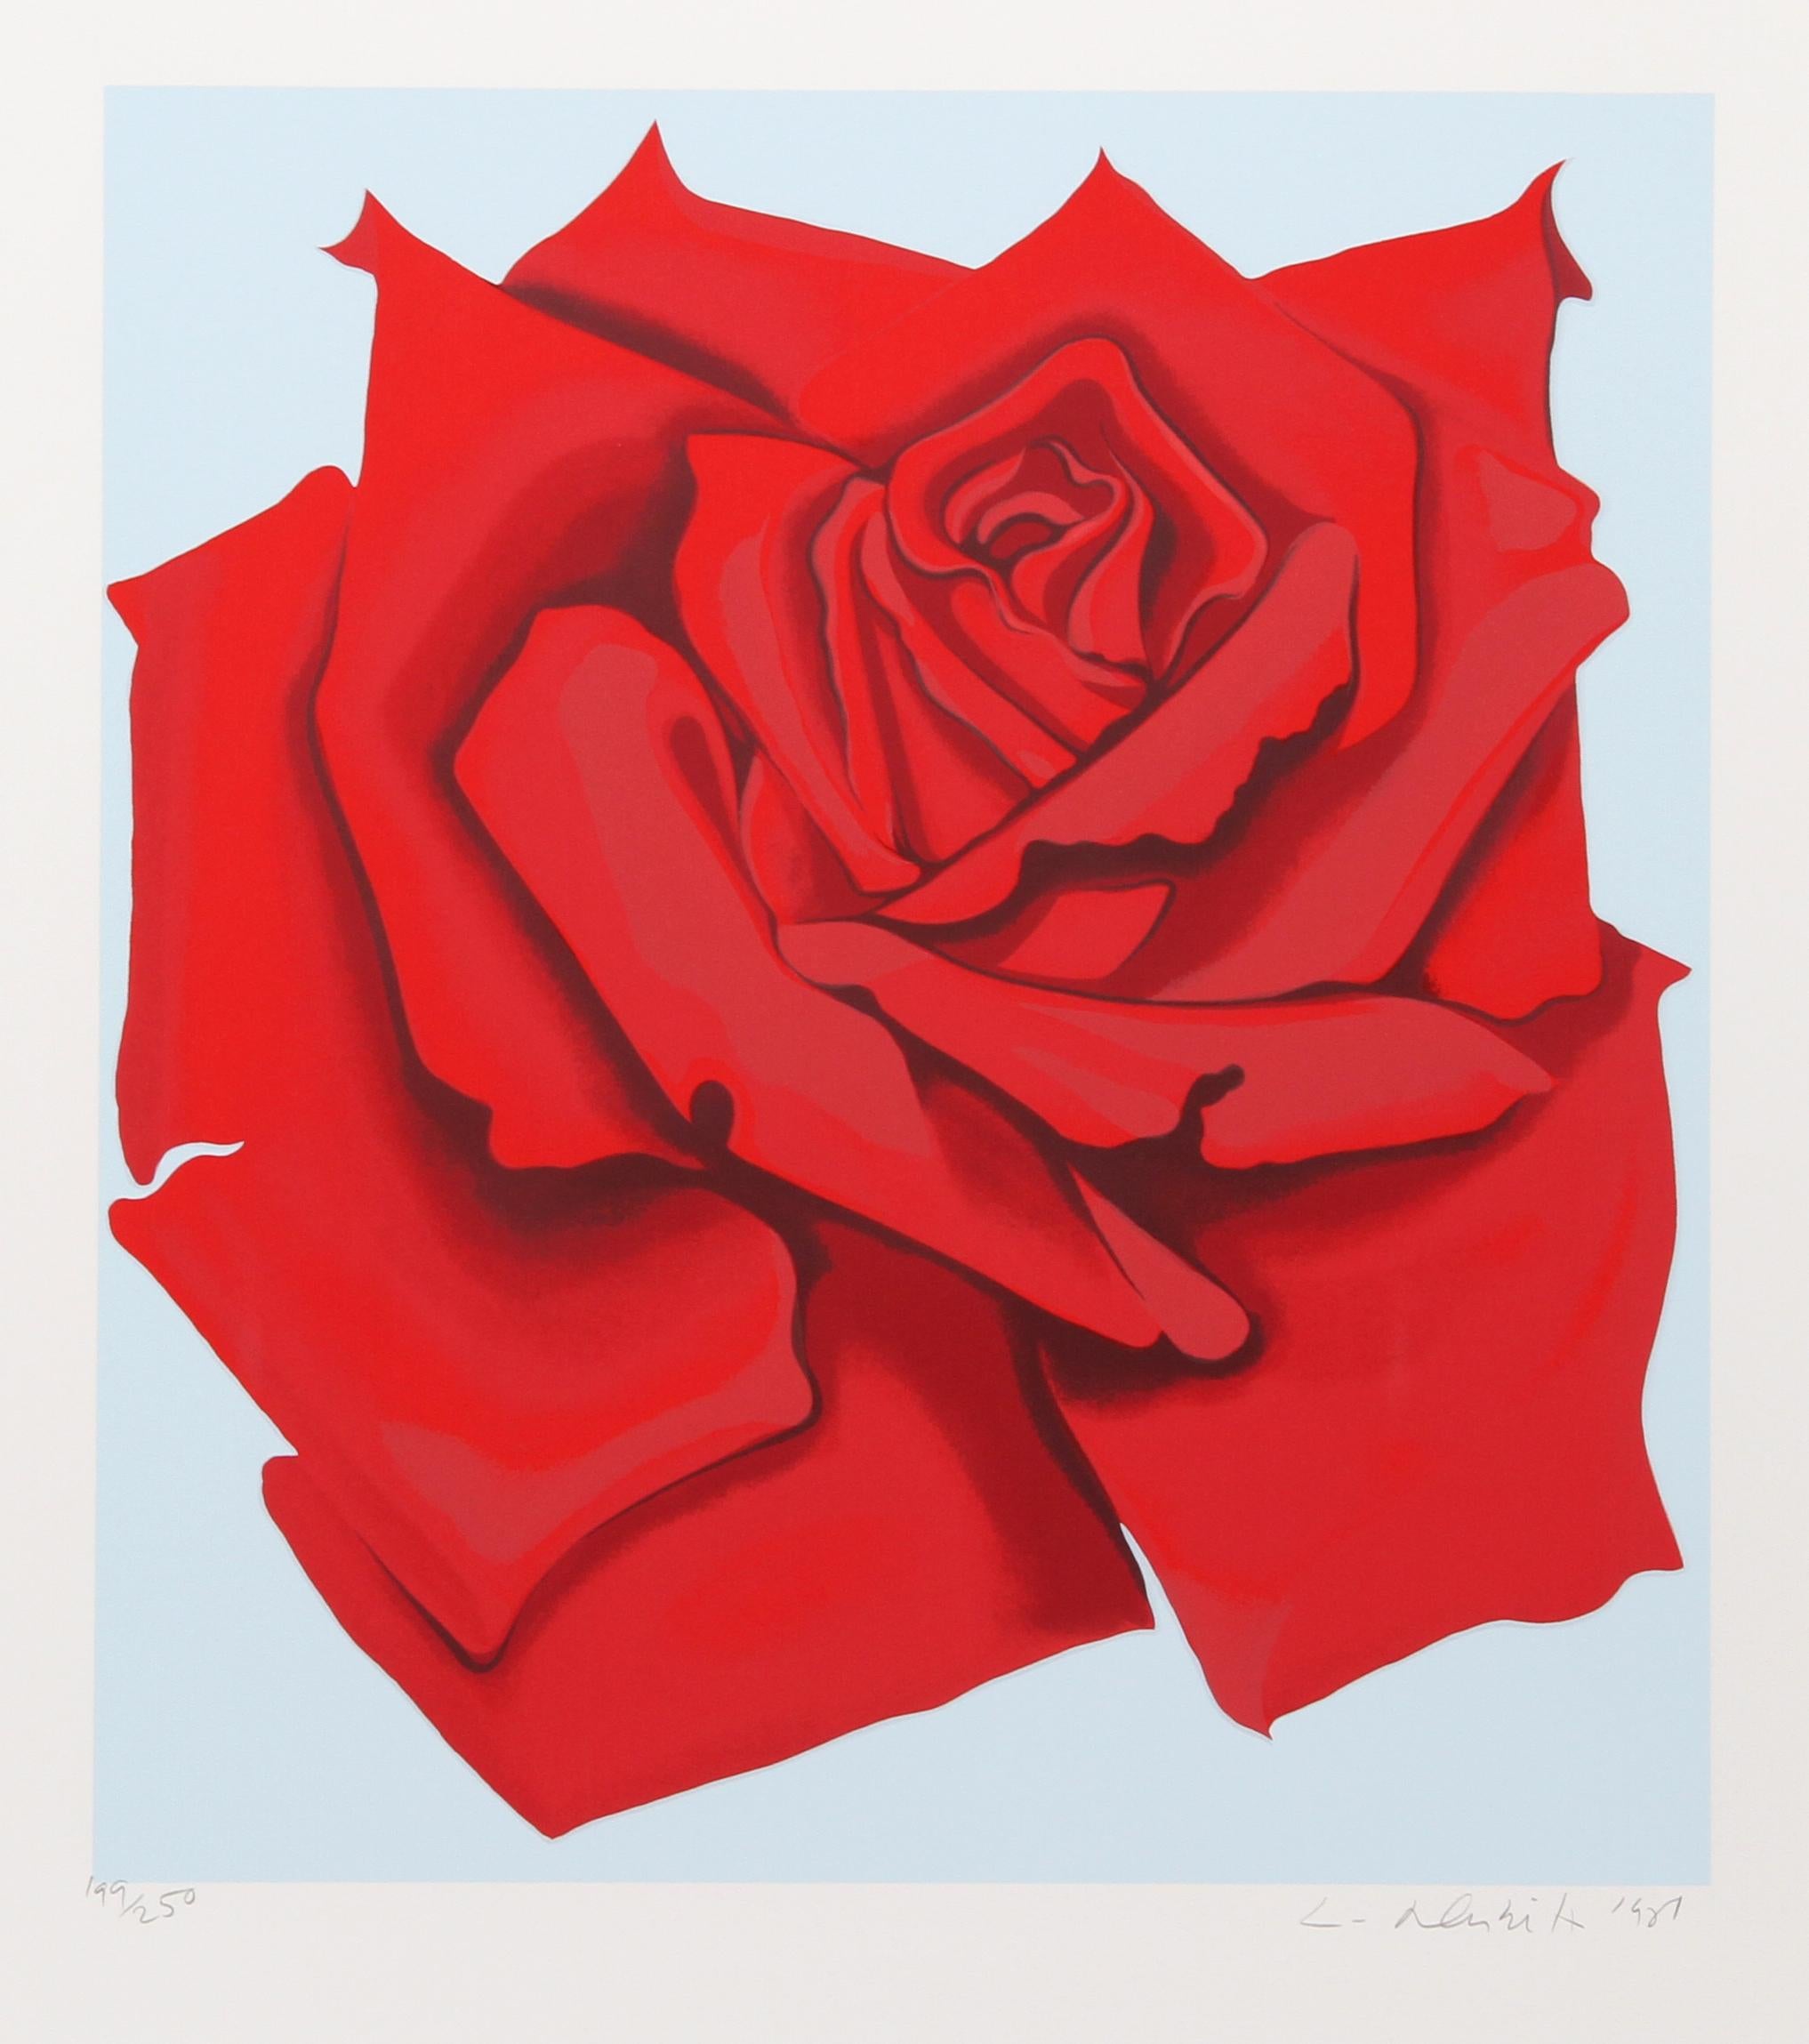 Künstler: Lowell Blair Nesbitt, Amerikaner (1933 - 1993)
Titel: Rote Rose aus der Serie Stamps
Jahr: 1981
Medium: Serigraphie, signiert und nummeriert mit Bleistift
Auflage: 250
Bildgröße: 20 x 18 Zoll 
Größe: 25 Zoll x 22 Zoll (63,5 cm x 55,88 cm)